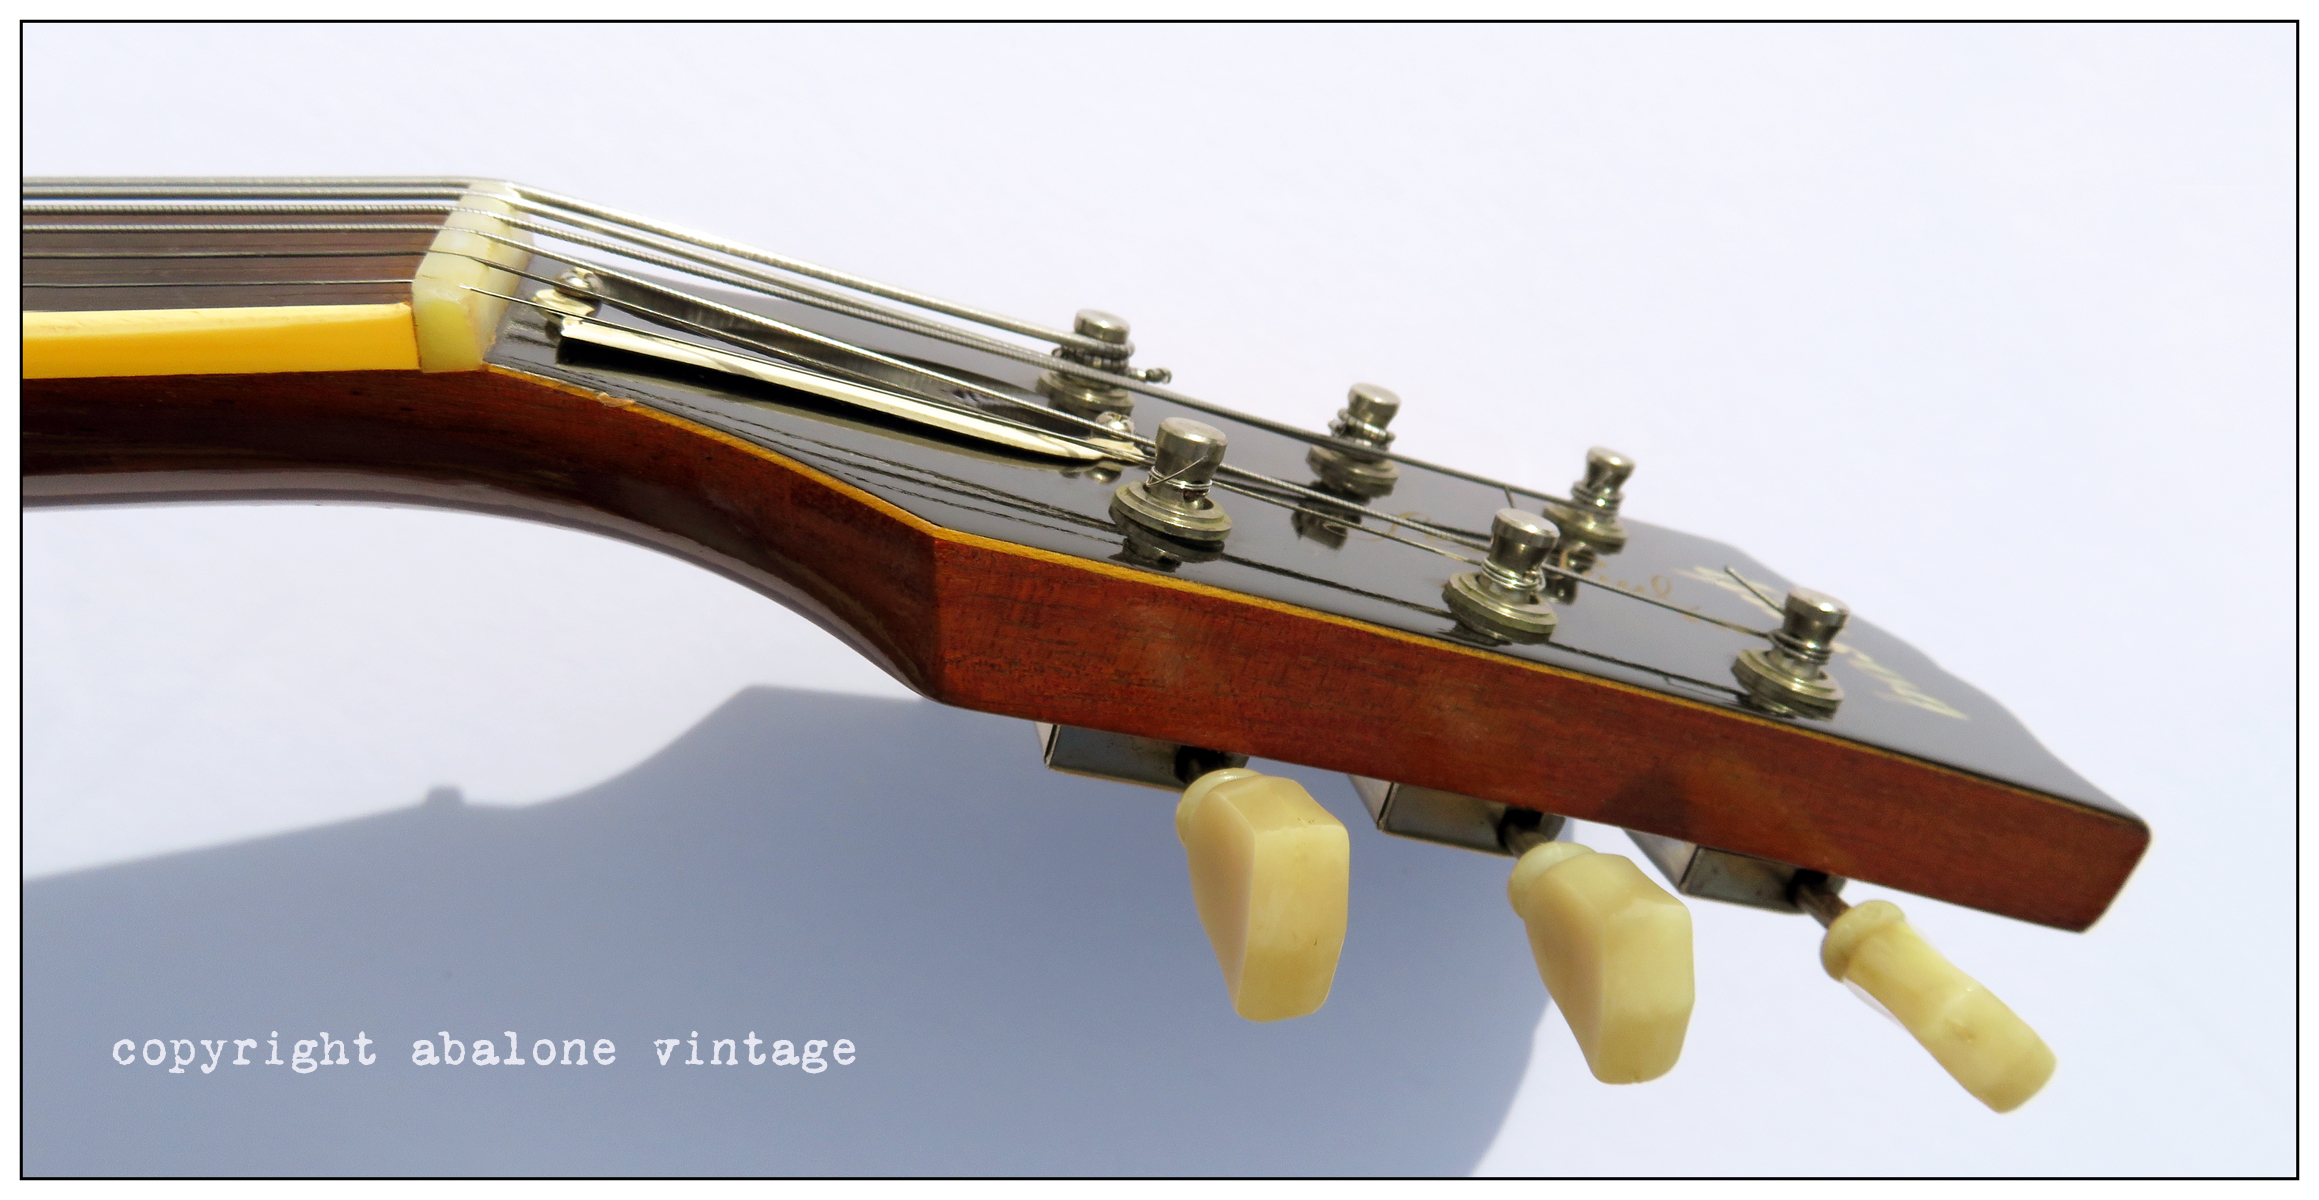 1957 Gibson Les Paul Standard "Goldtop" guitar near mint!